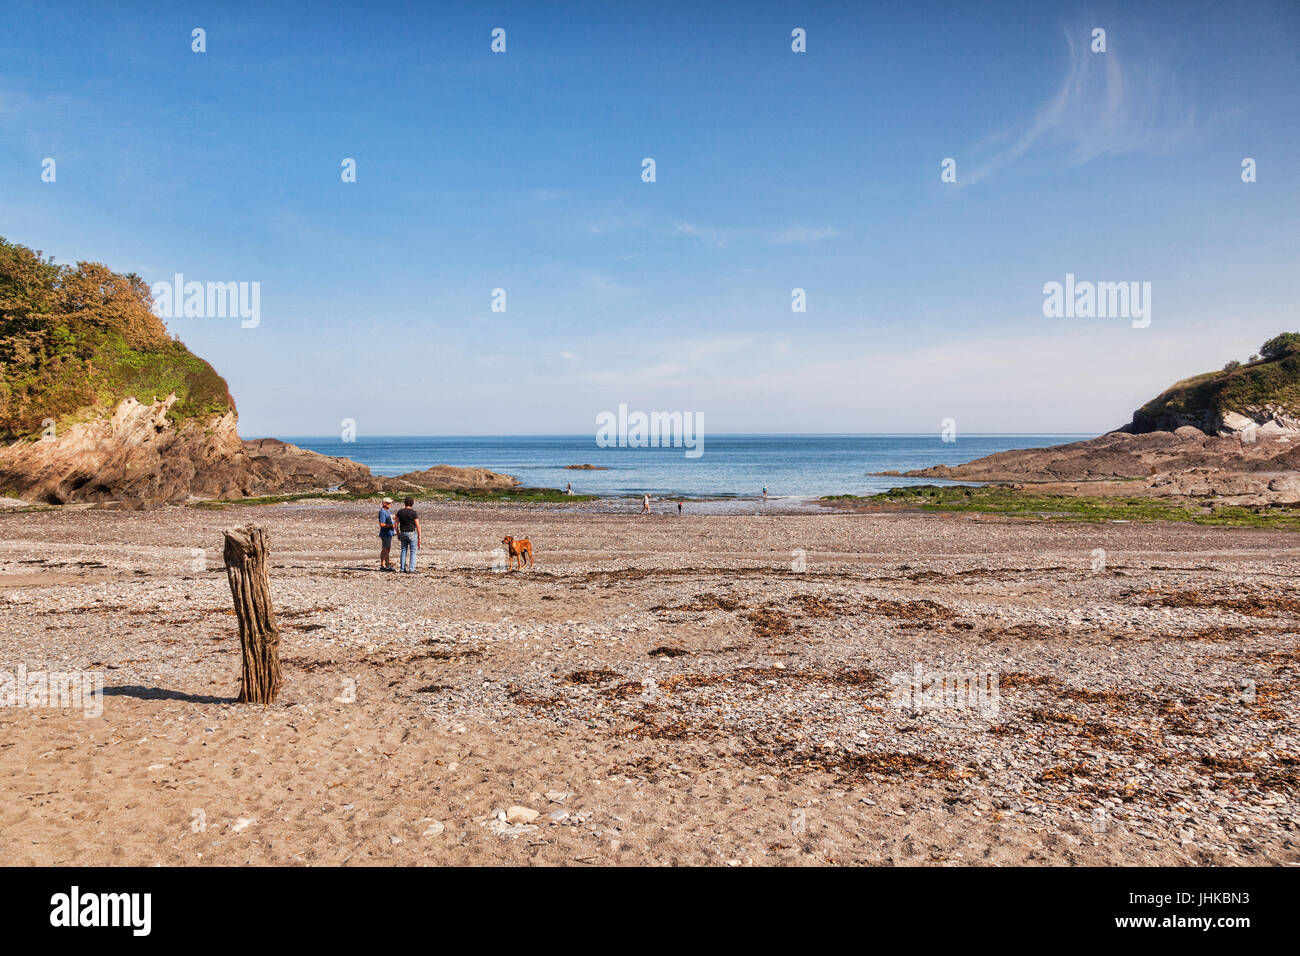 19 Giugno 2017: Hele Bay, North Devon, Inghilterra, Regno Unito - La spiaggia su una mattina di sole, nel passato, il vecchio posto di legno è stato utilizzato per legare le navi che d Foto Stock